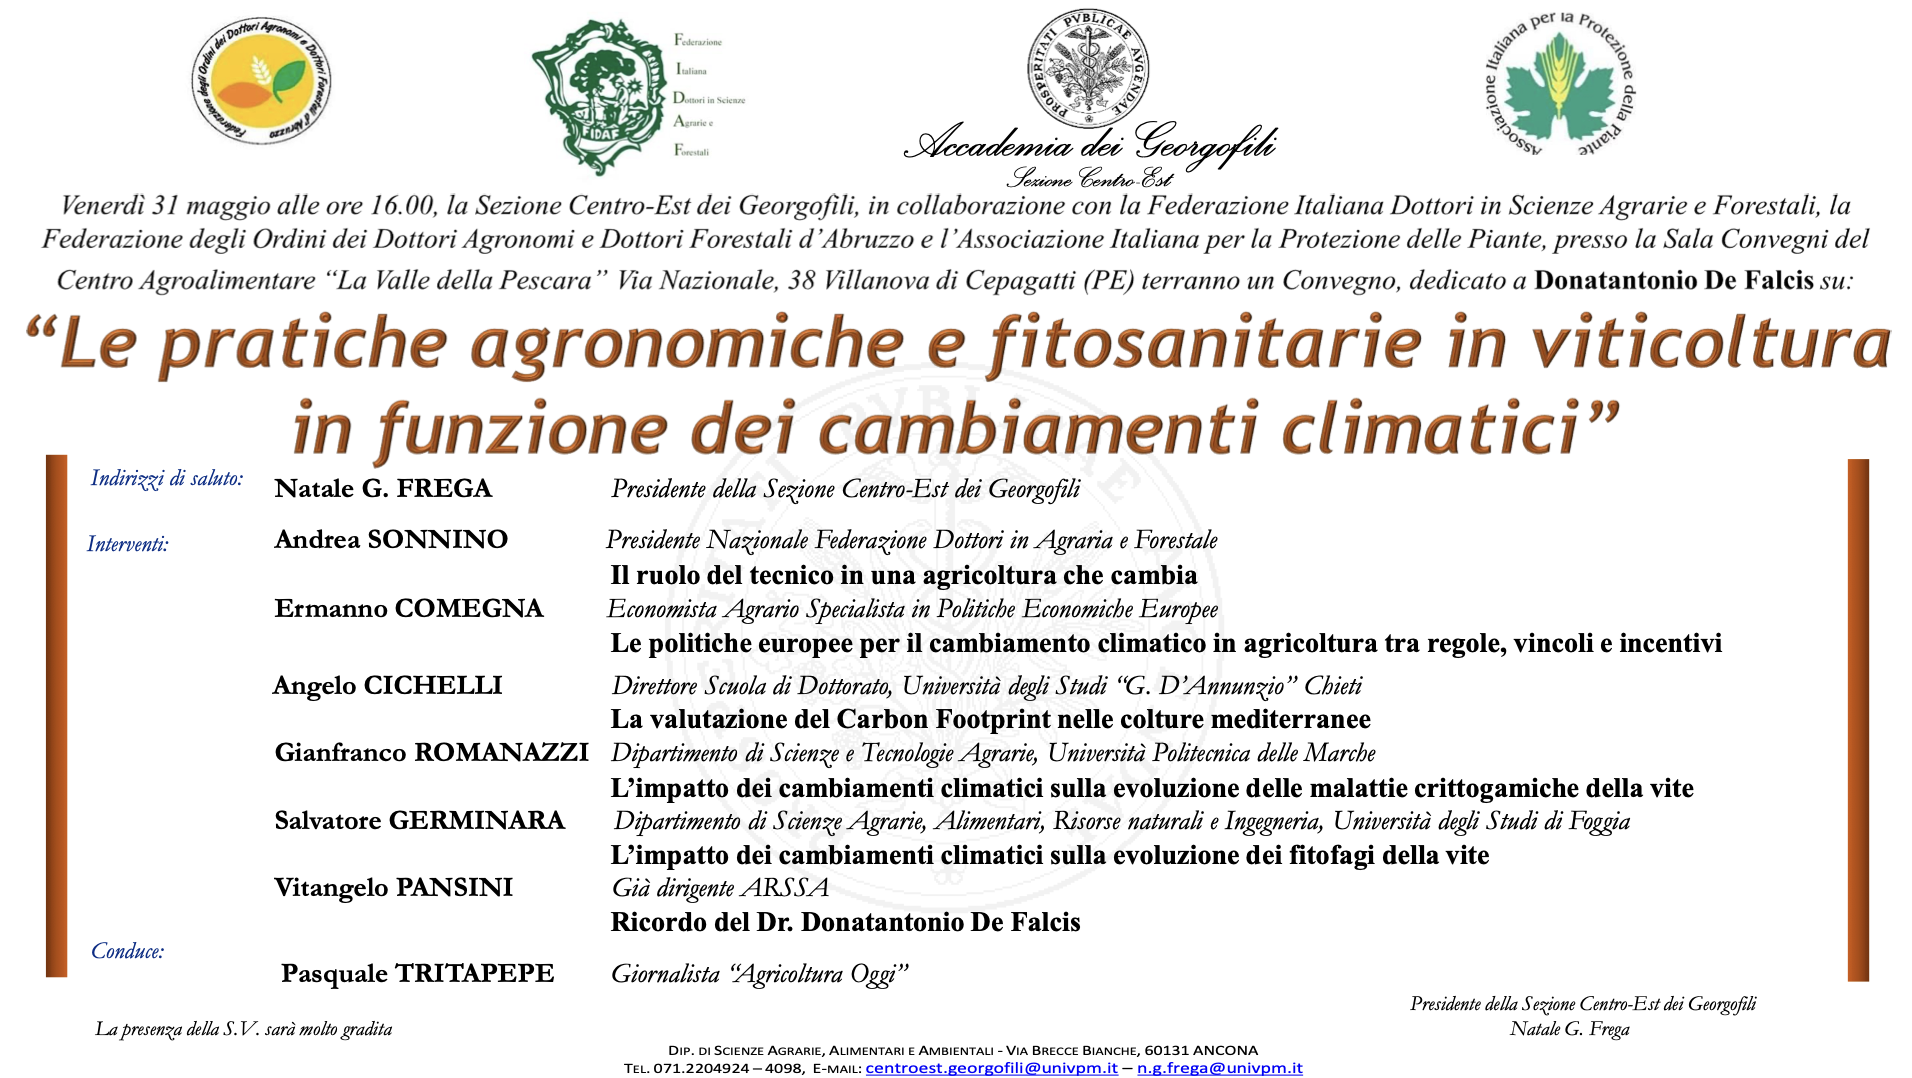 Le pratiche agronomiche e fitosanitarie in viticoltura in funzione dei cambiamenti climatici